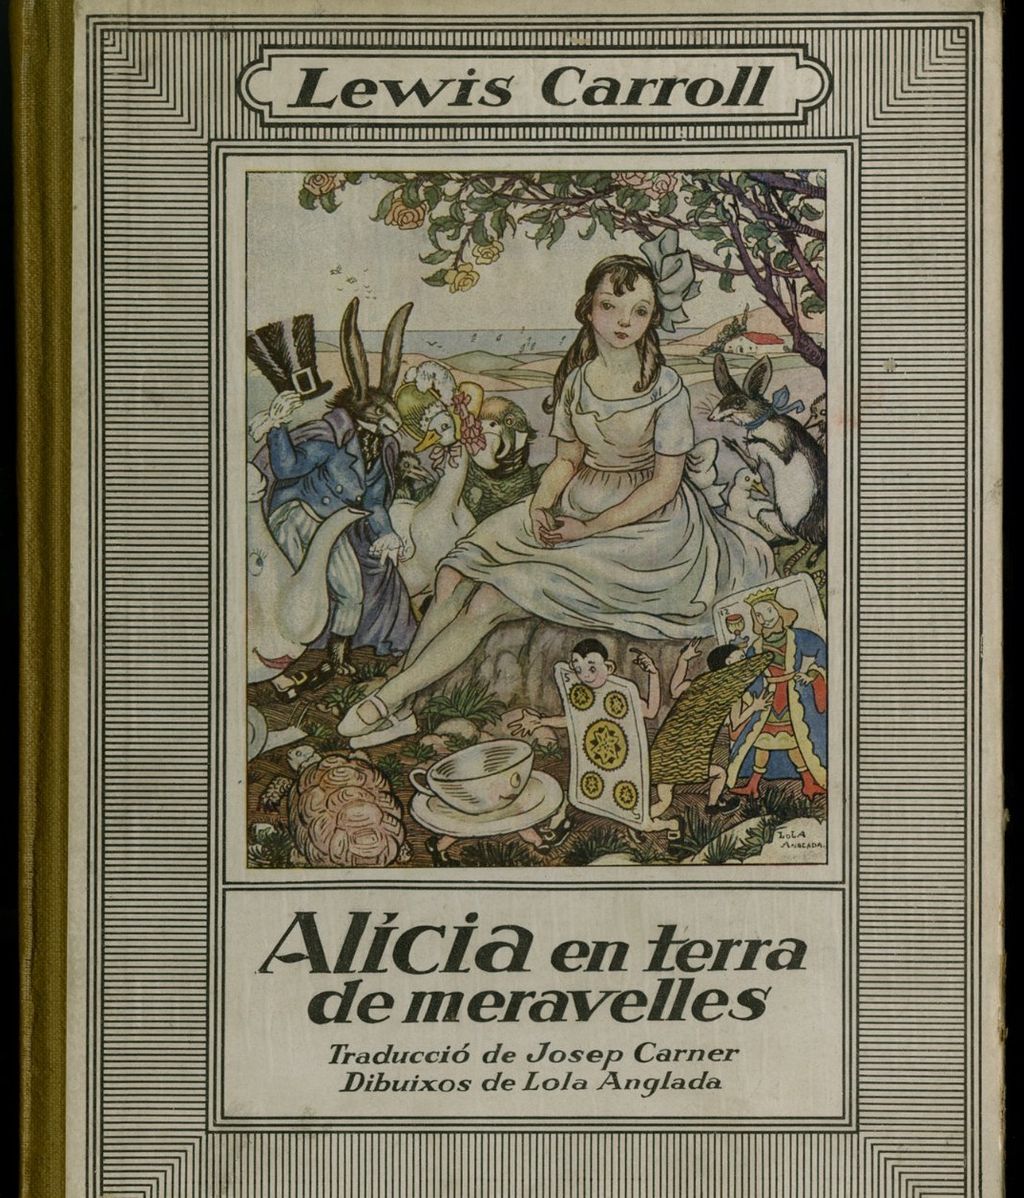 Este volimen de 'Alicia en el País de las Maravillas' era uno de los libros que leian los usuarios de la sala